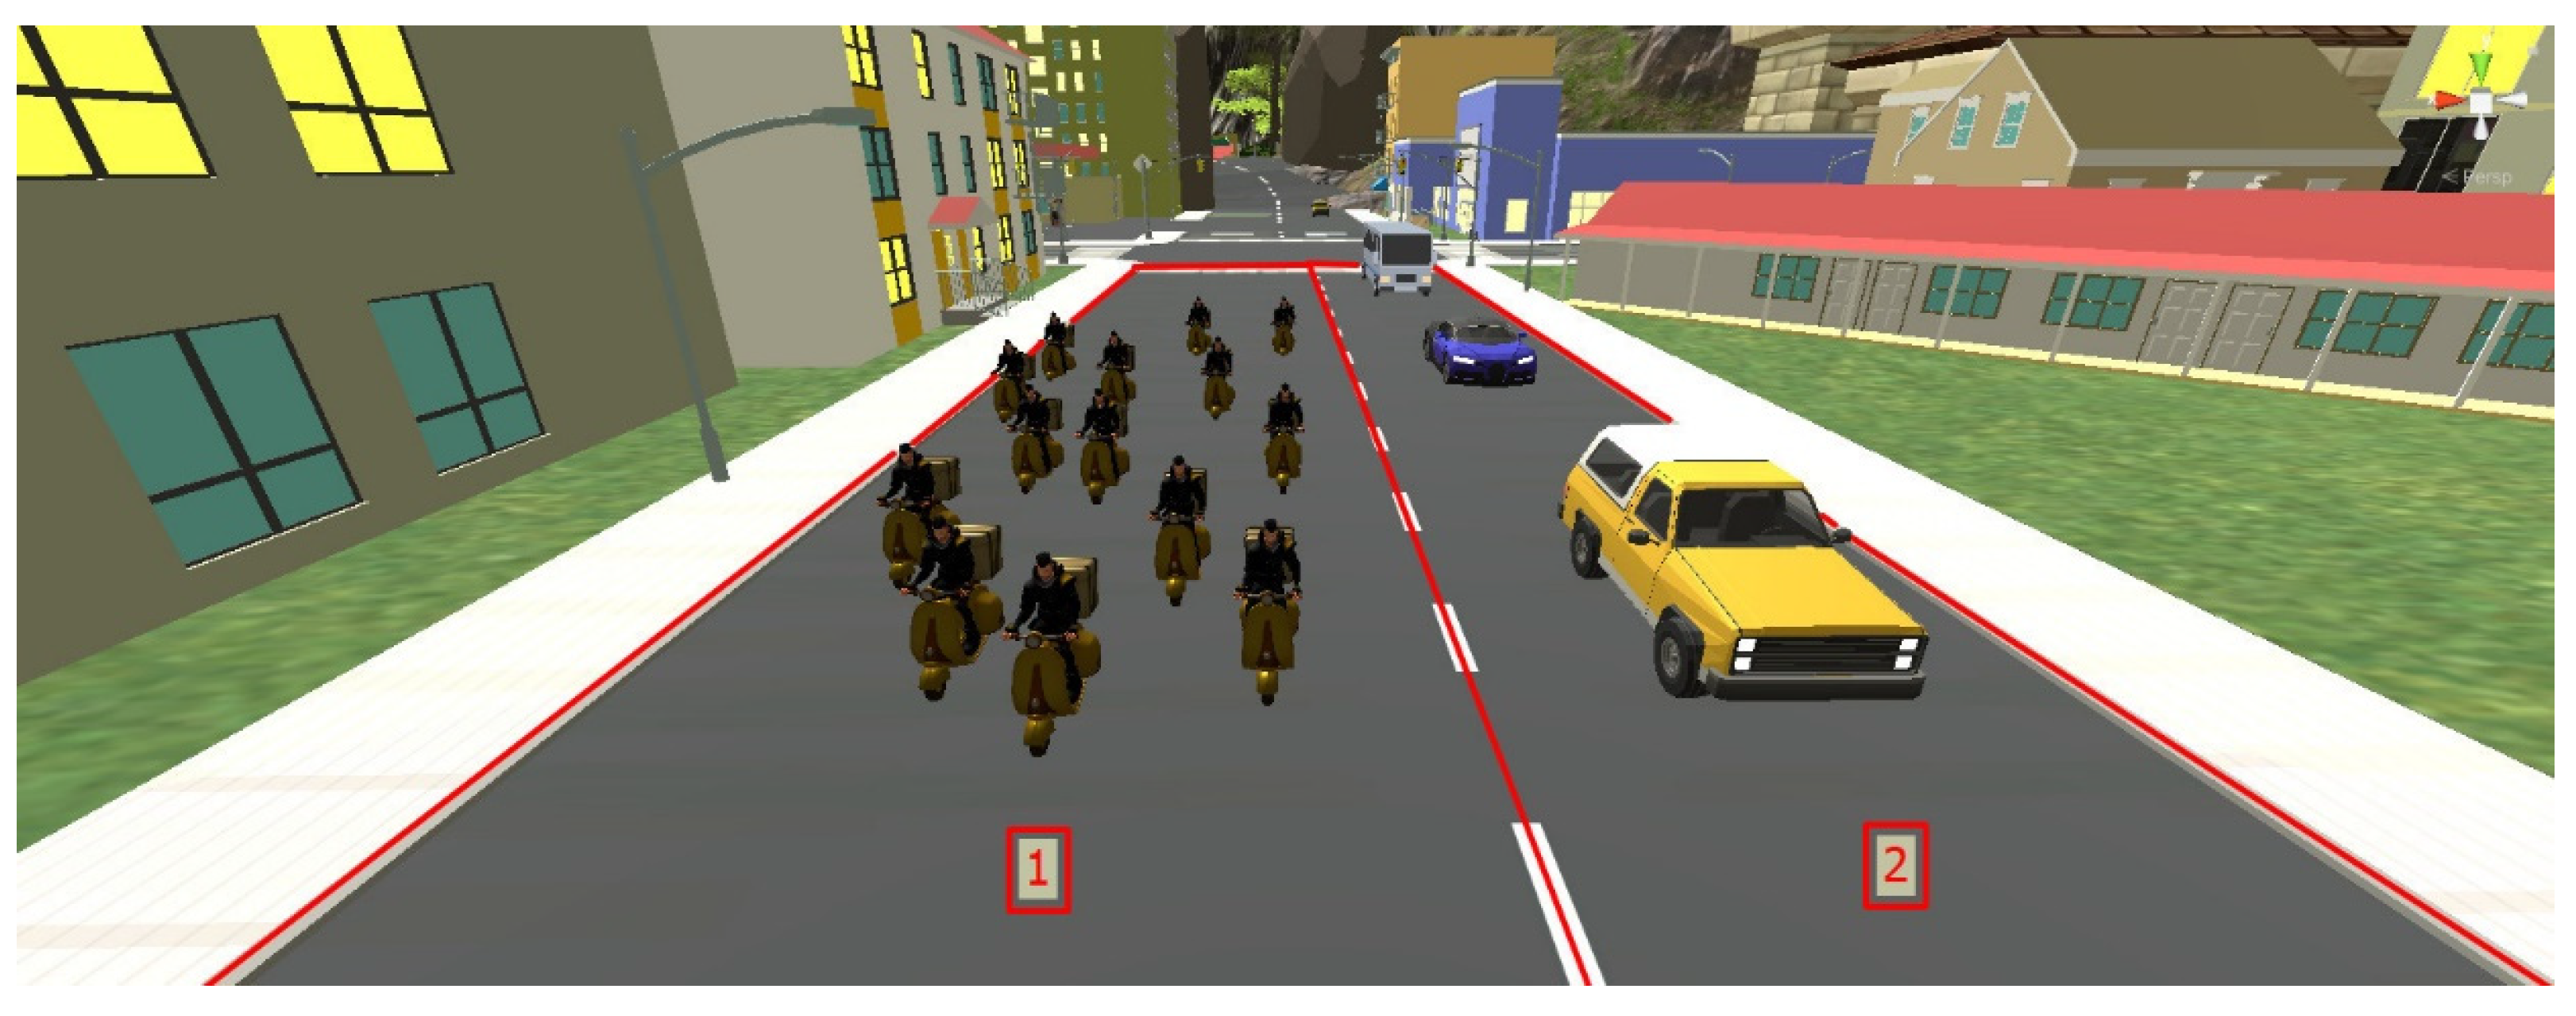 MAN TGS Steering Wheel Gameplay, City Car Driving simulator